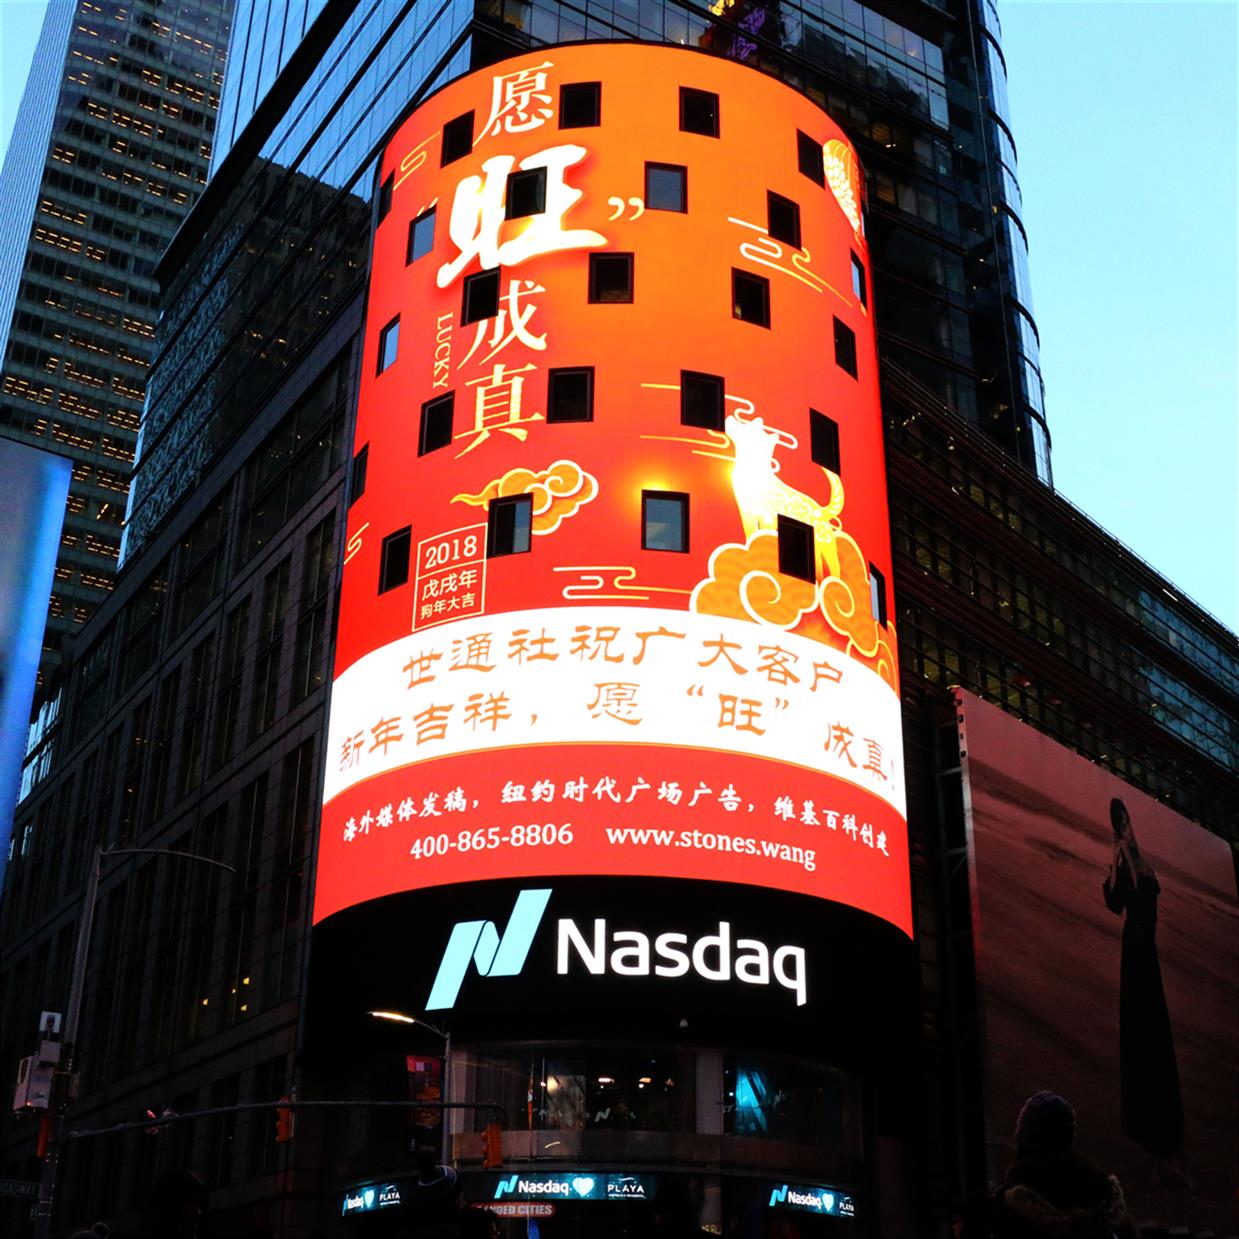 美国纽约时代广场广告制作 纳斯达克图片广告 一站式服务平台